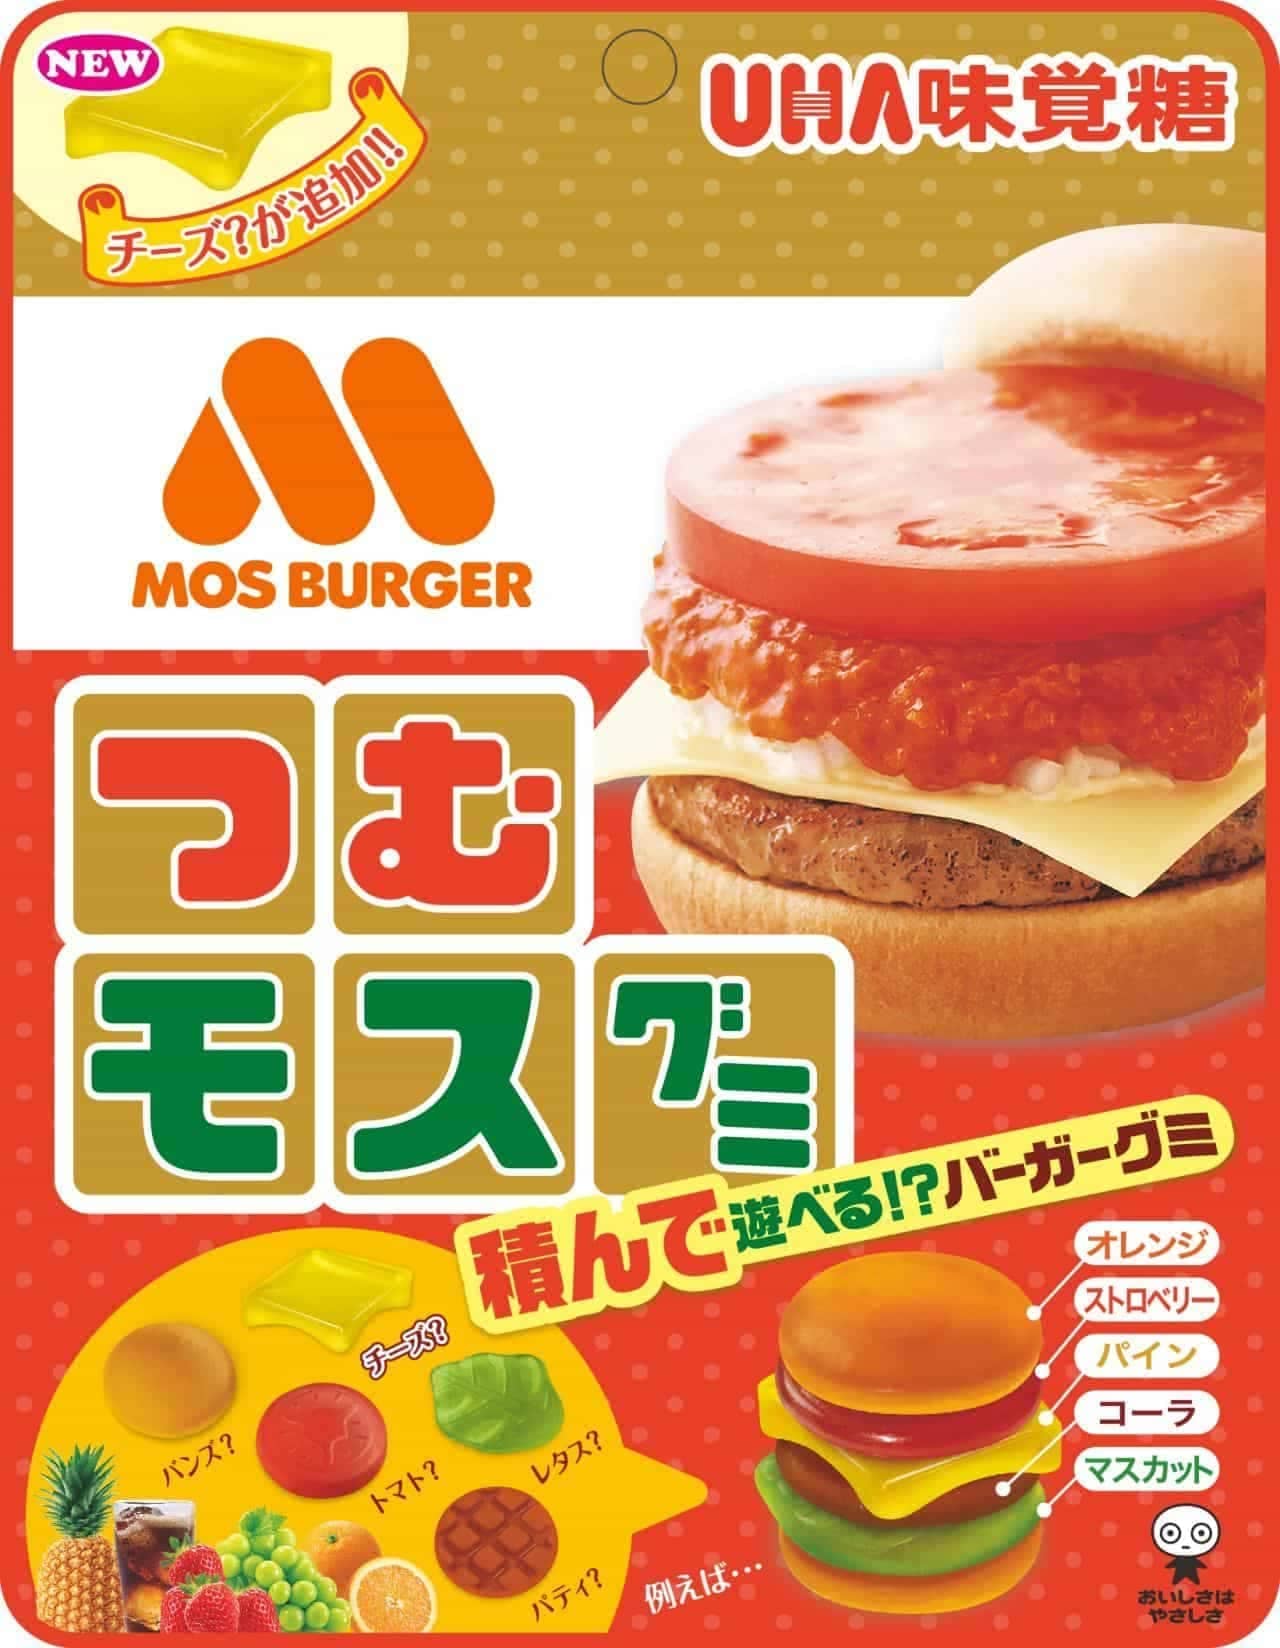 UHA Mikakuto x Mos Burger "Tsumu Mos Gumi" 2nd